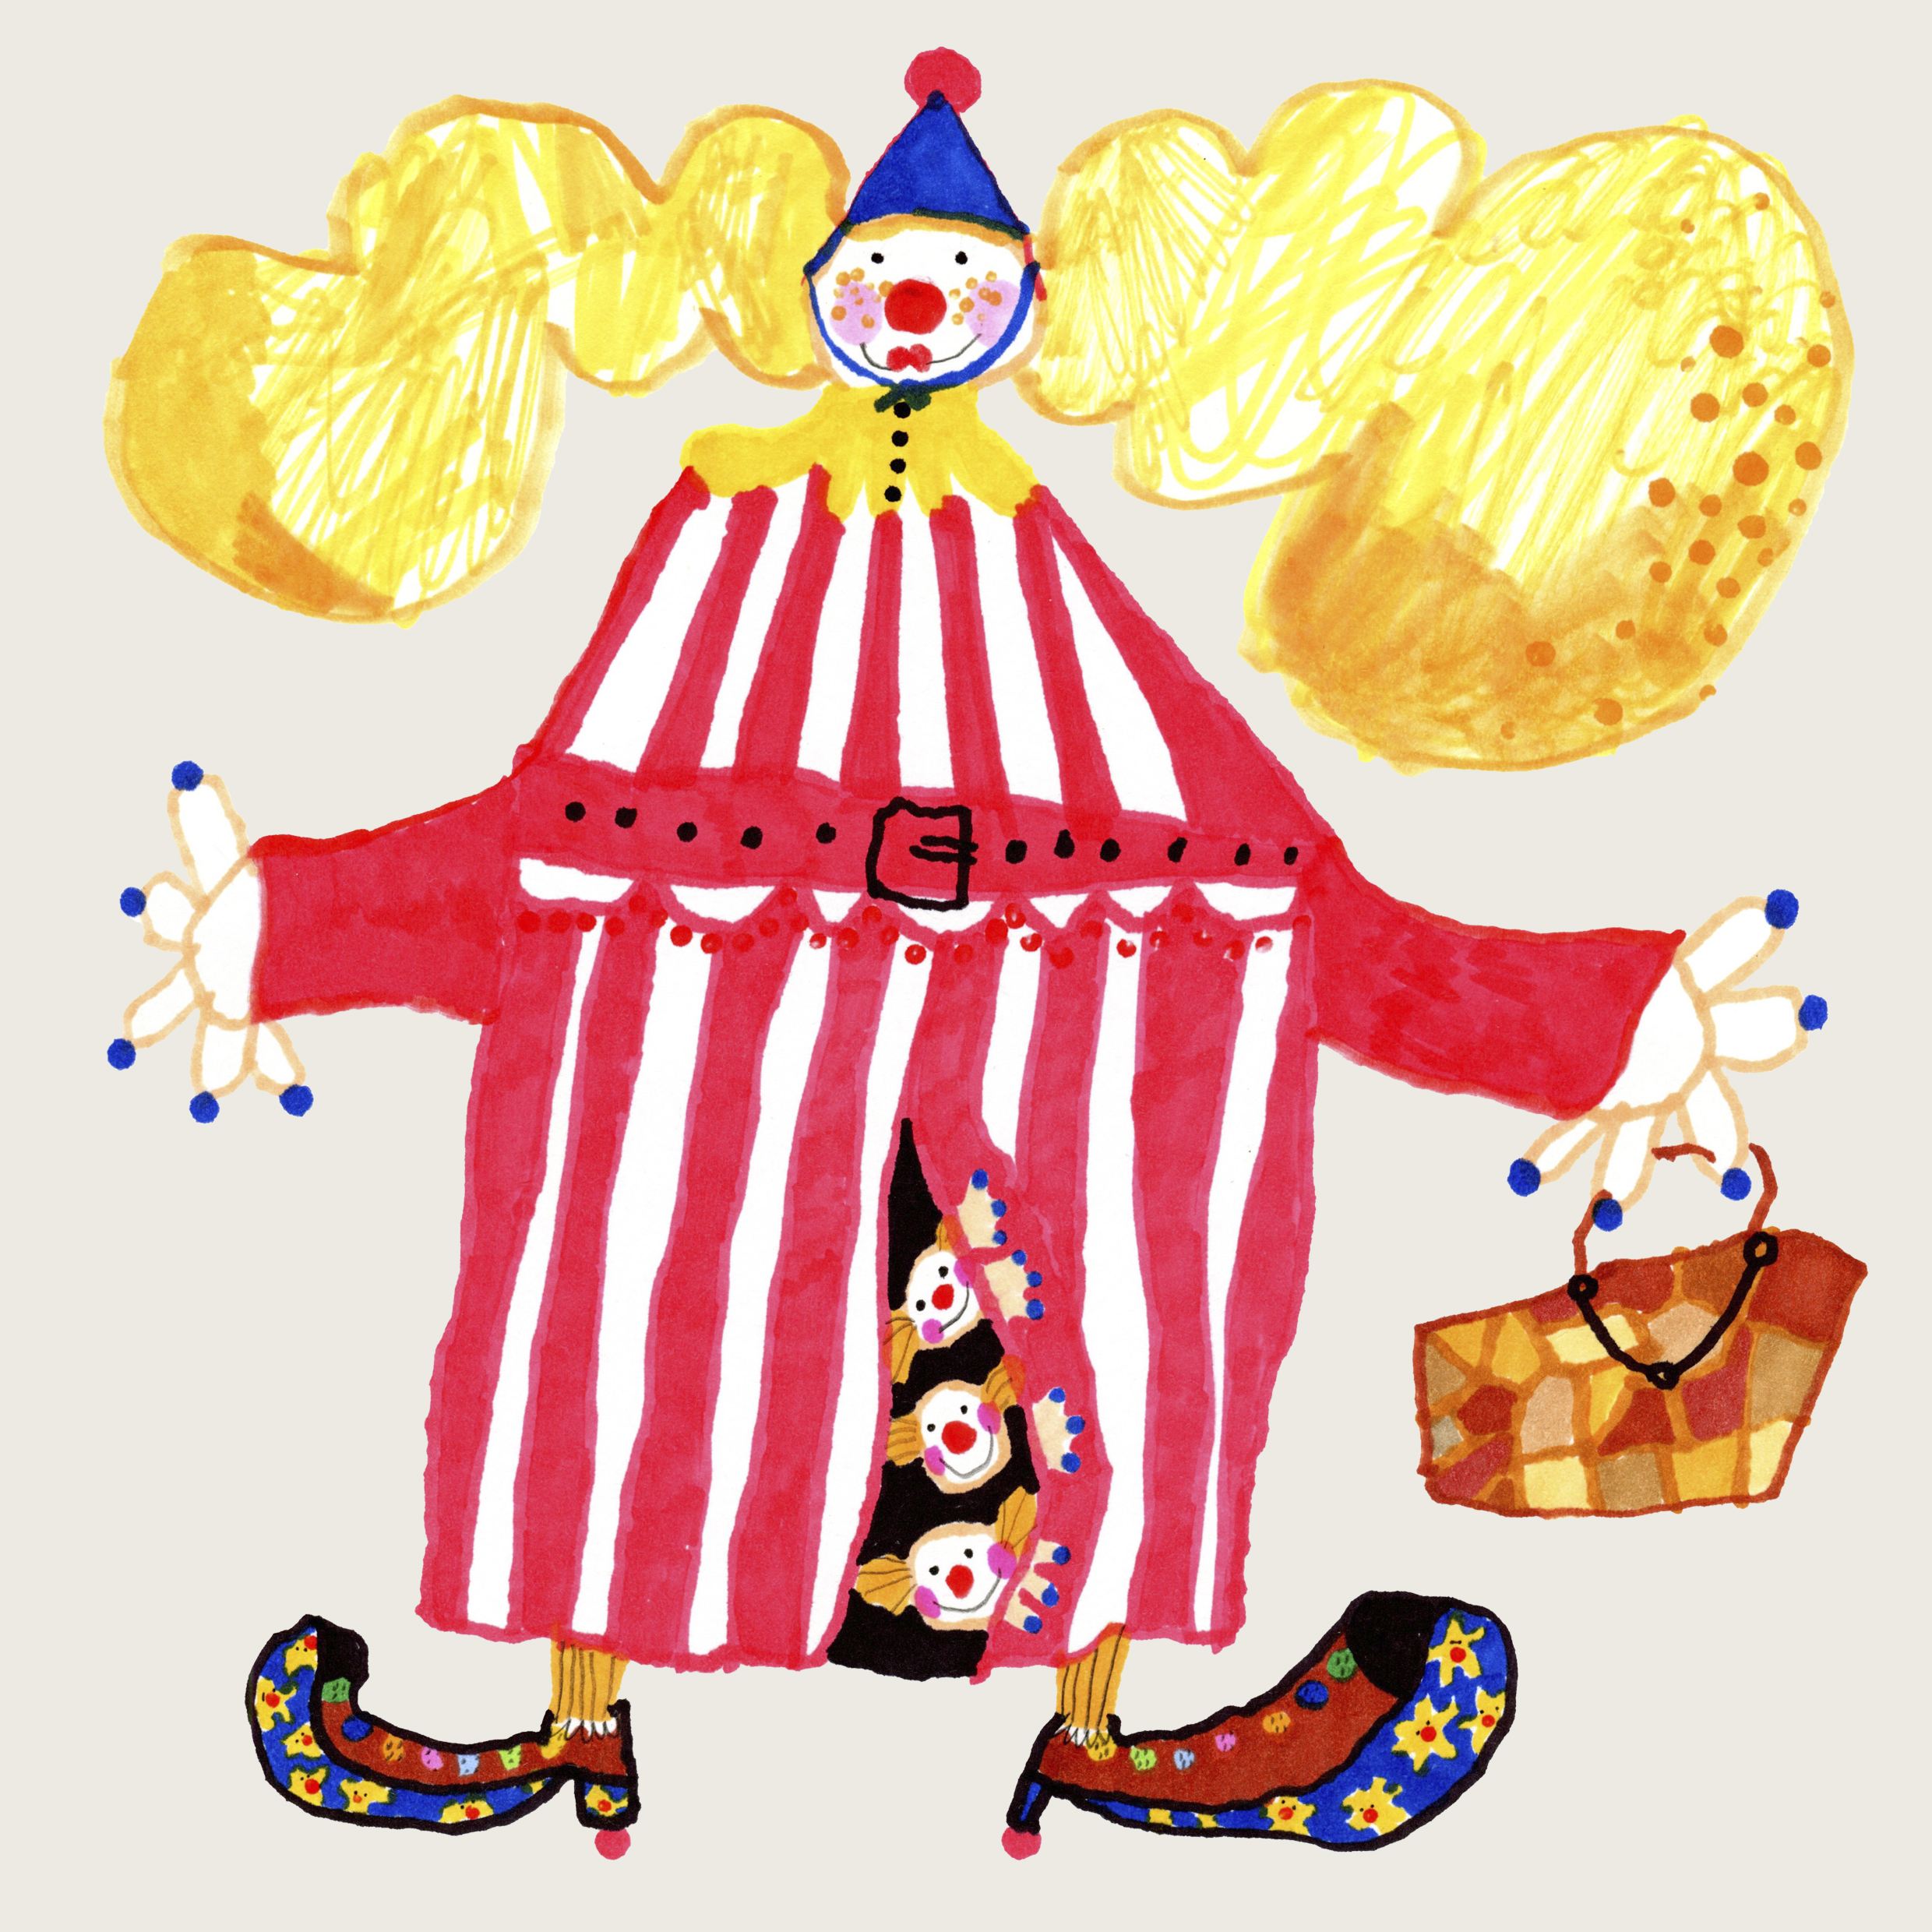 Рисунок клоуна в полосатом трико бело-красного цвета, синим колпаком и желтыми волосами. Из под трико выглядывают три маленьких клоуна, а в руке - корзина